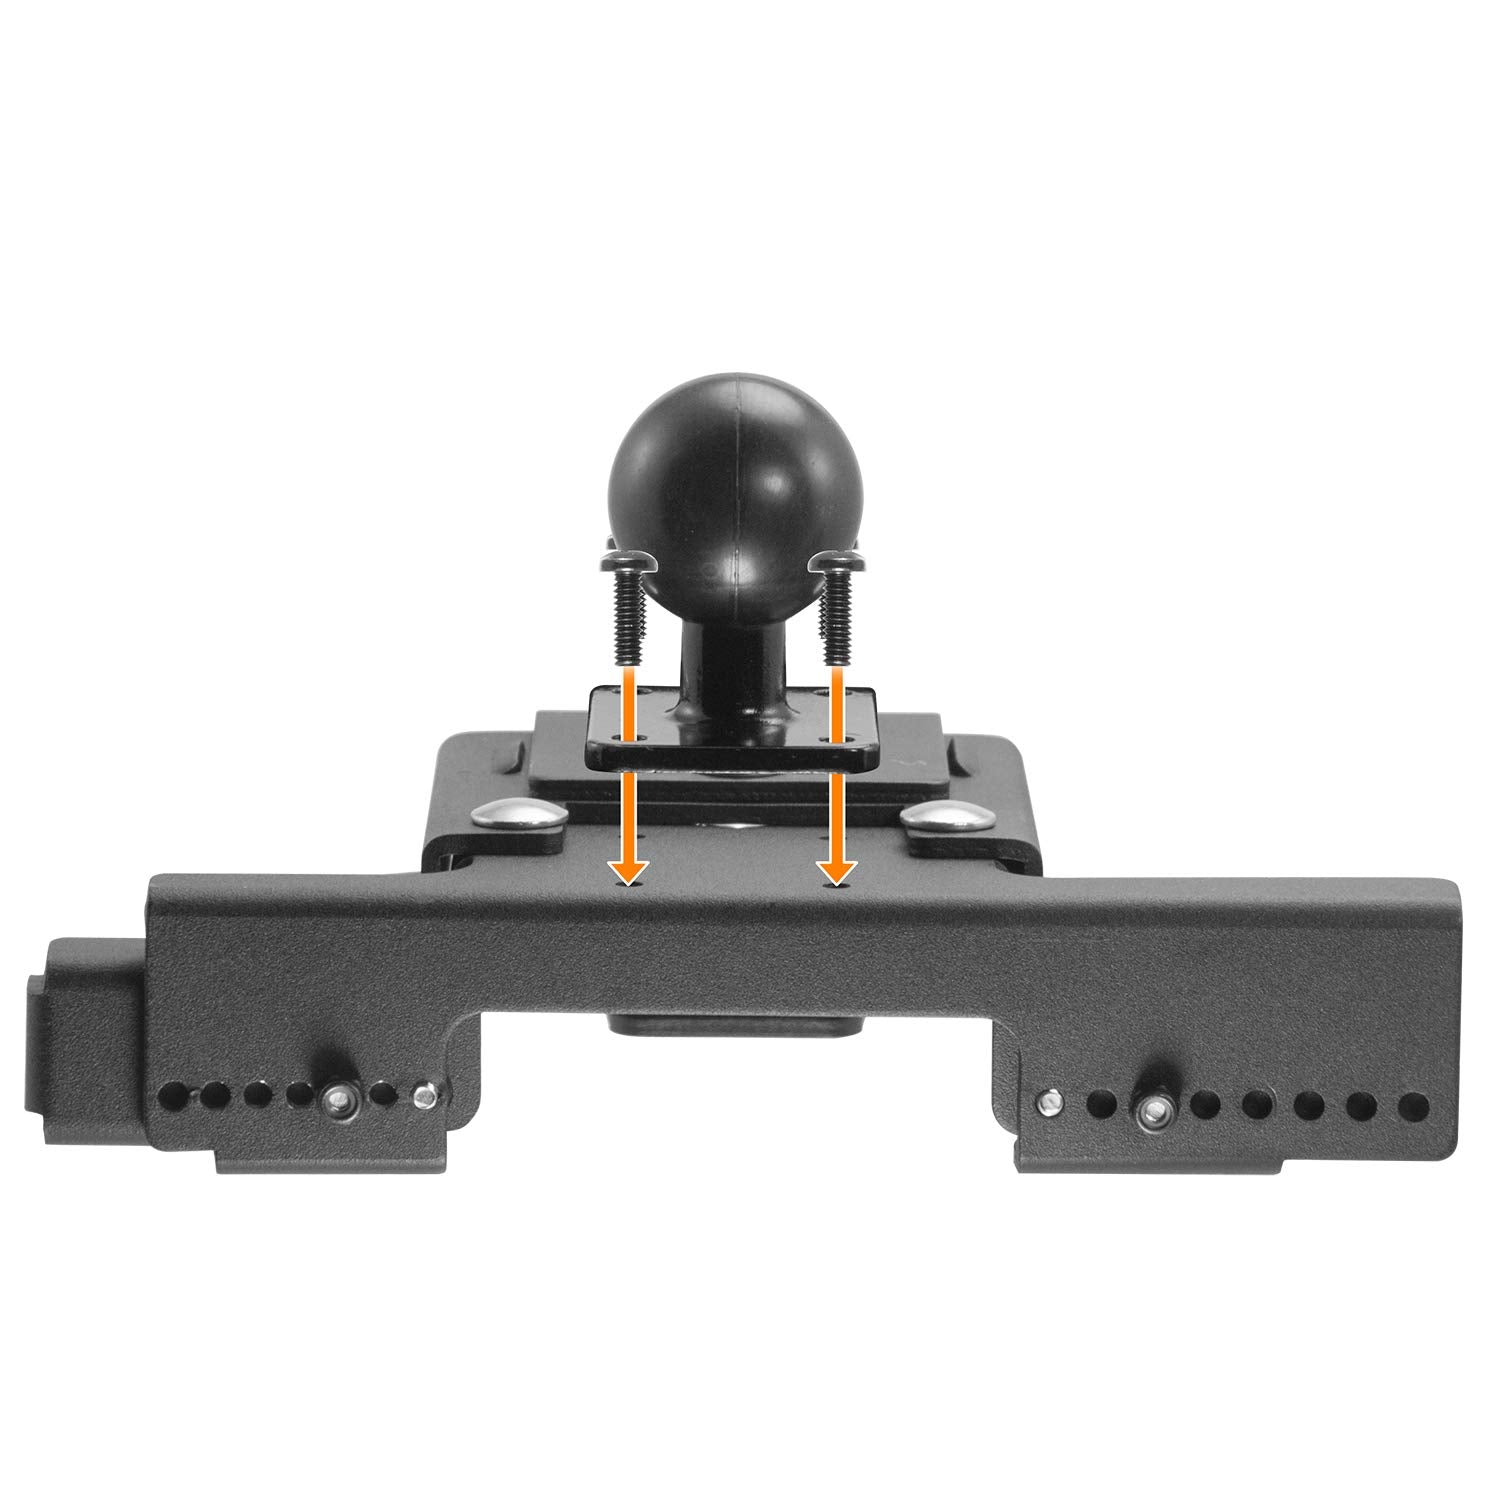 iBOLT™ LockPro™ 38mm Amps- Metal Locking Tablet Mount